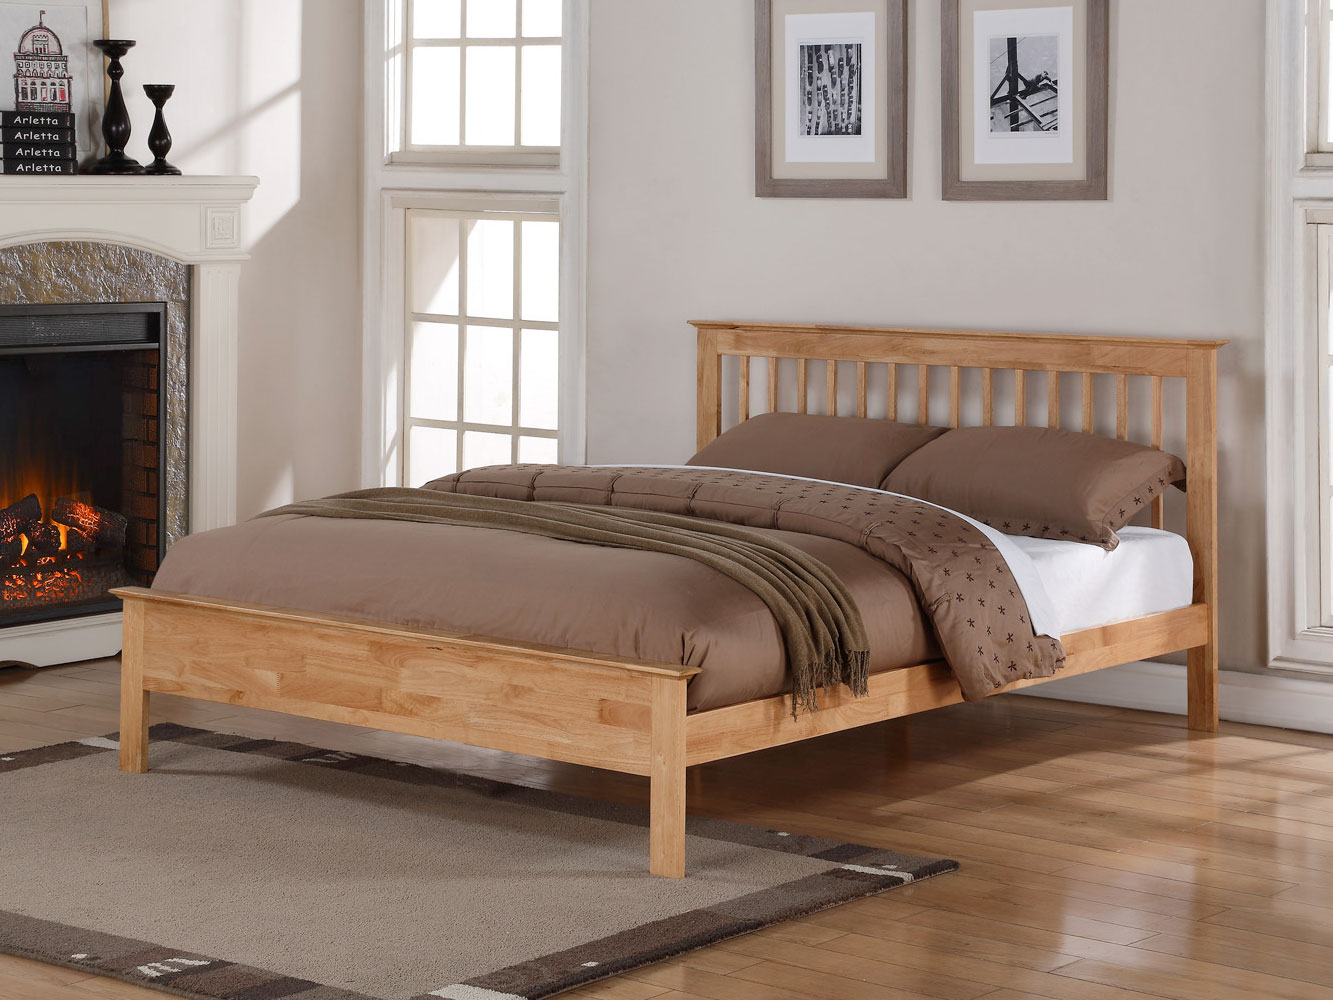 3ft Single Flintshire Furniture Pentre Hard Wood Bedstead